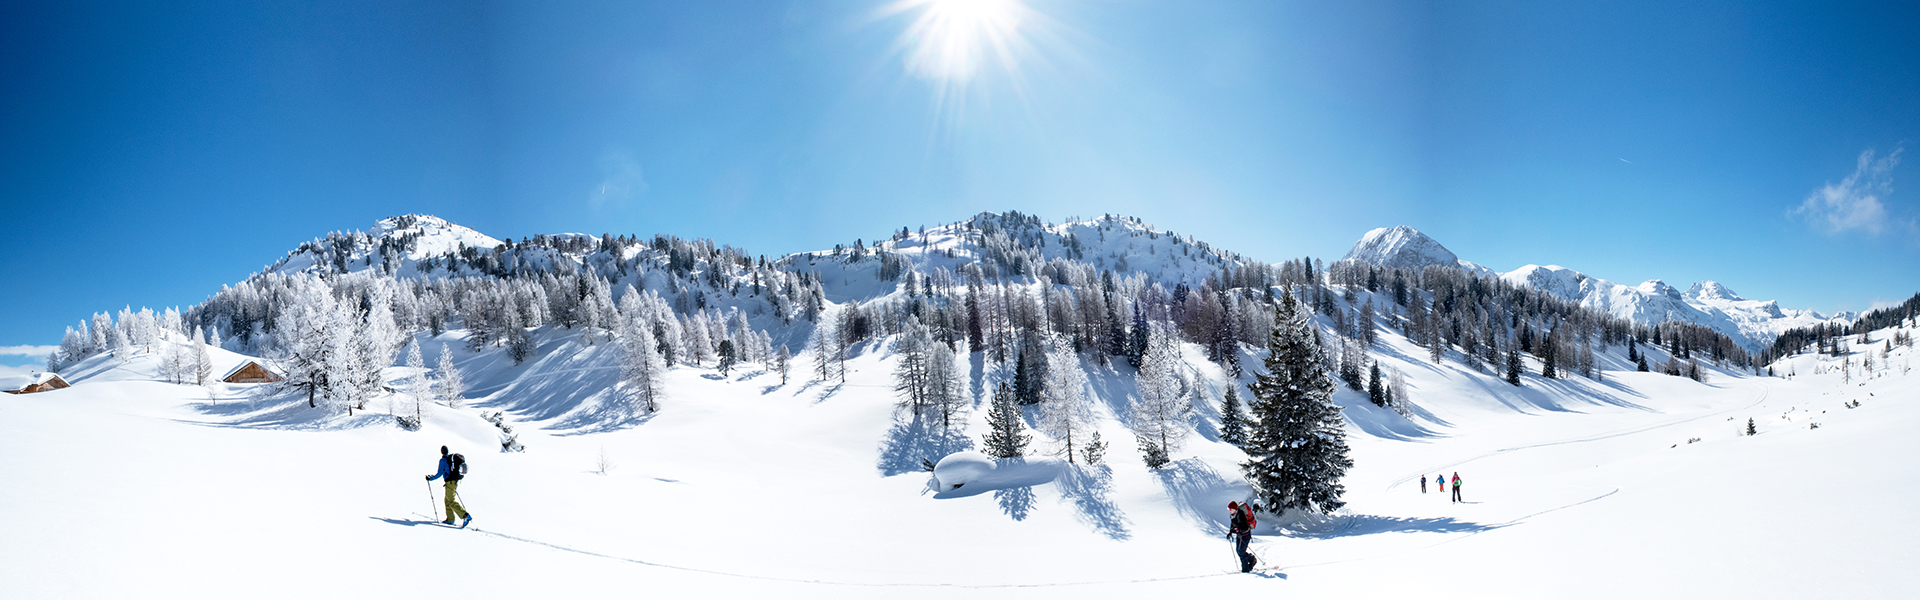 Skitourengeher mit traumhaften Panorama und weite Winterlandschaft bei Sonnenschein